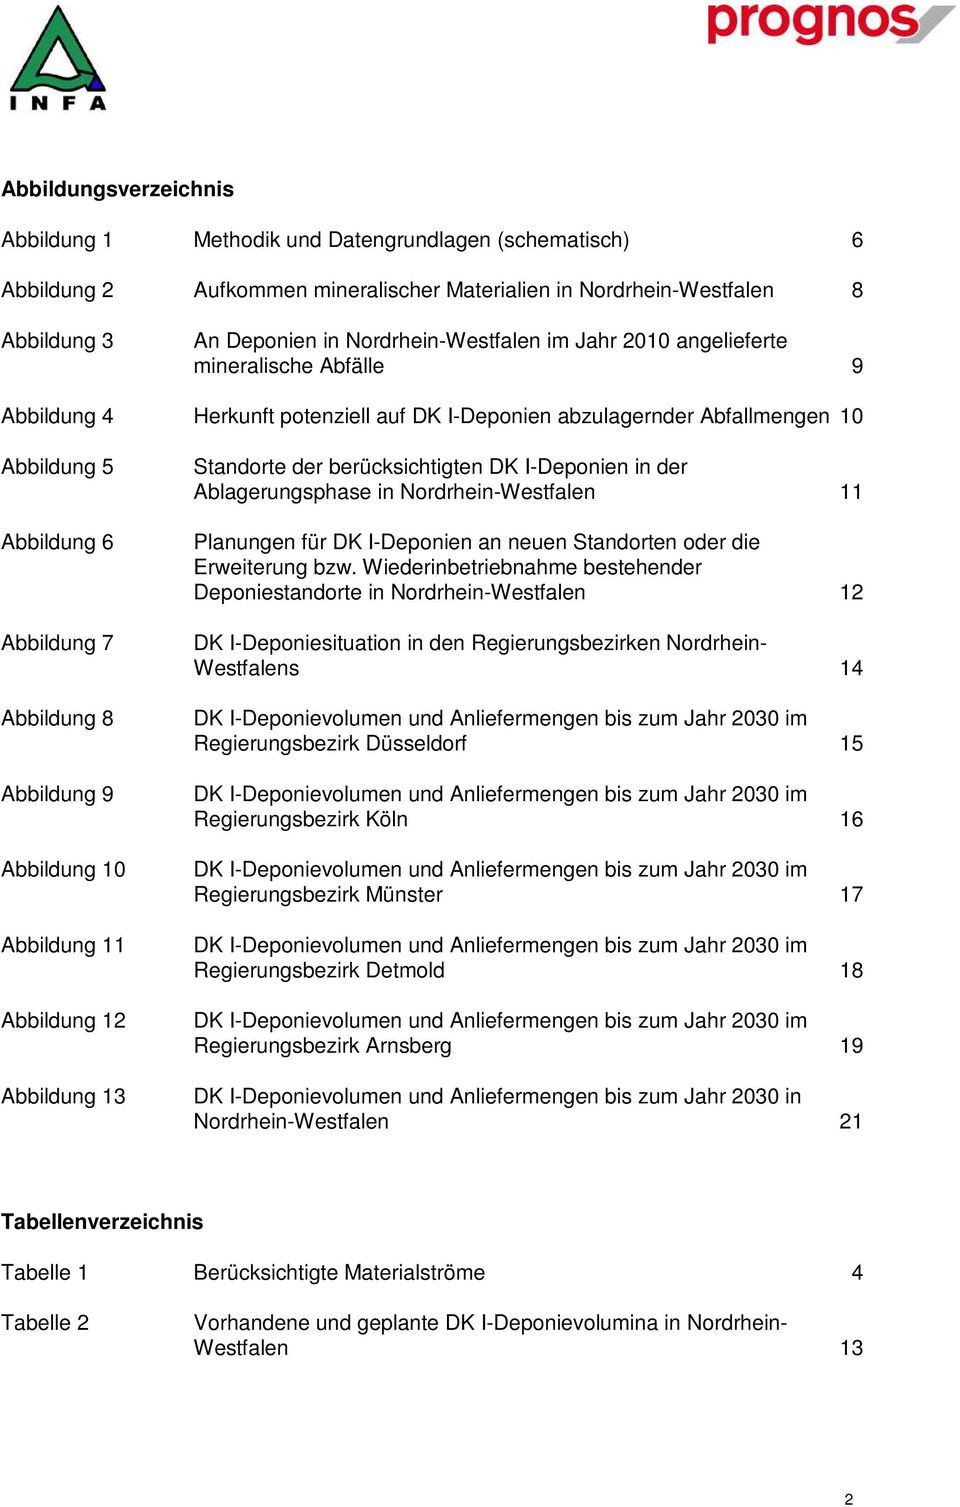 10 Abbildung 11 Abbildung 12 Abbildung 13 Standorte der berücksichtigten DK I-Deponien in der Ablagerungsphase in Nordrhein-Westfalen 11 Planungen für DK I-Deponien an neuen Standorten oder die